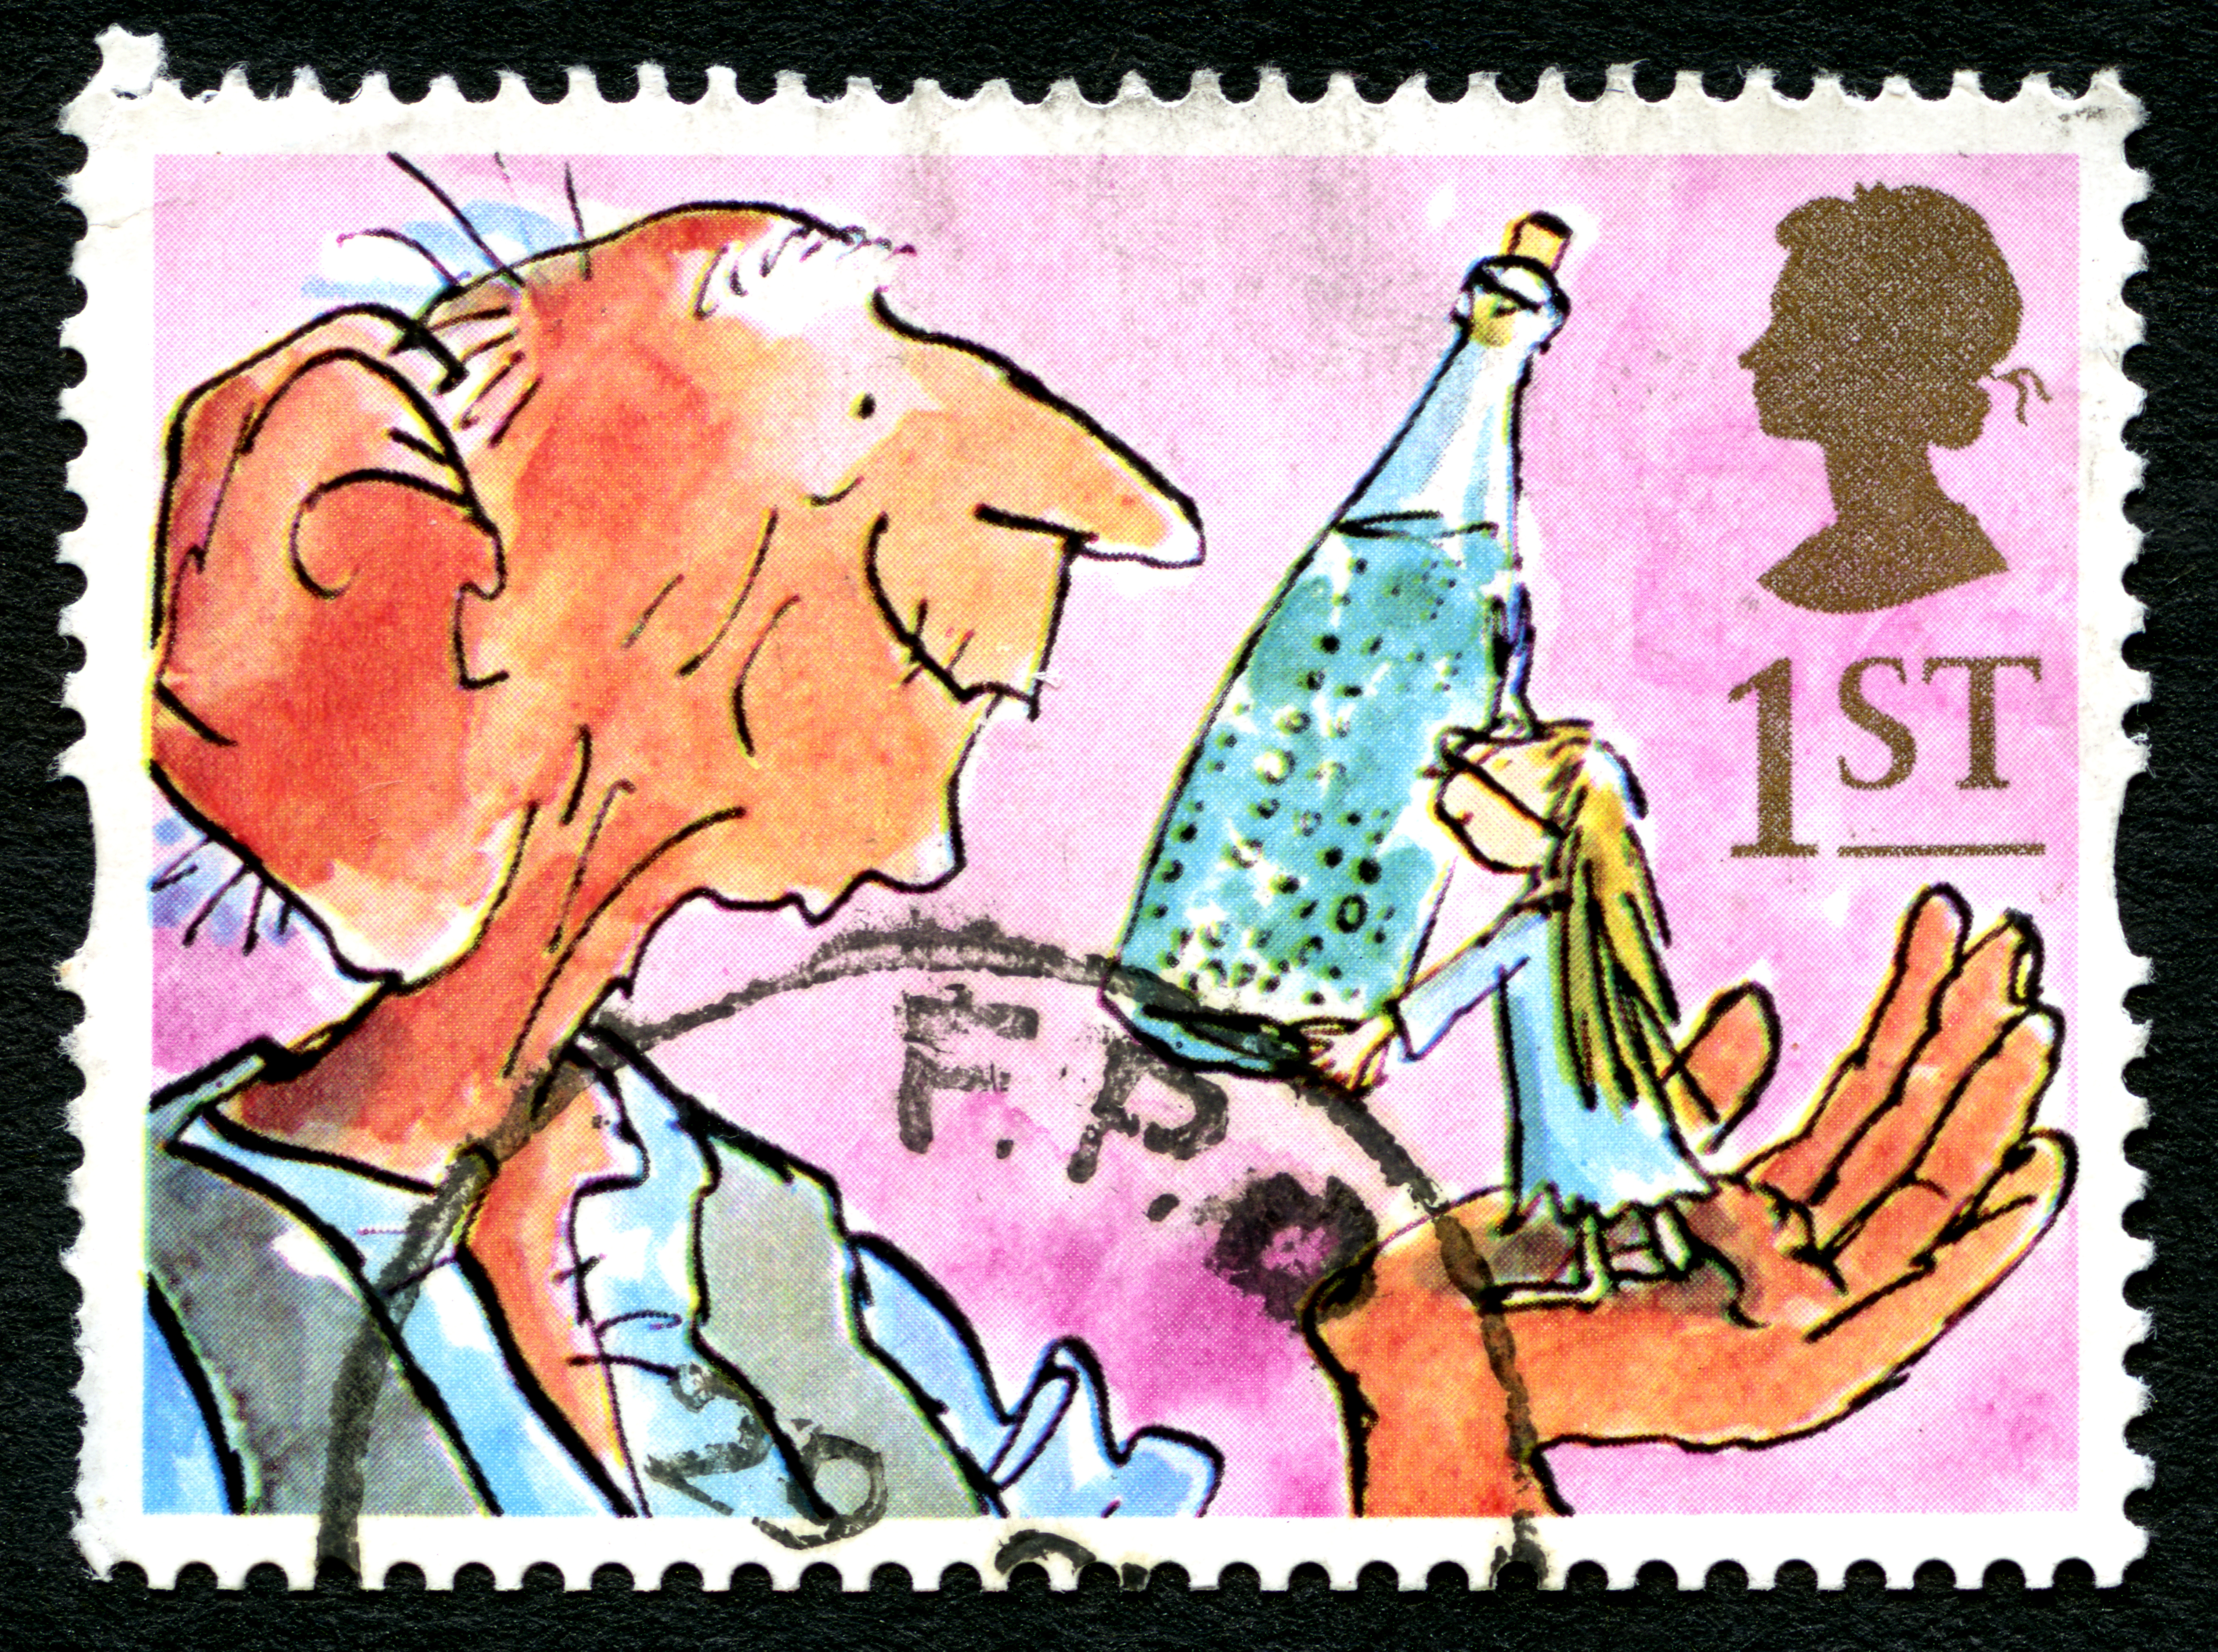 Un timbru poștal din Marea Britanie reprezentând o ilustrație din romanul „BFG” de Roald Dahl.